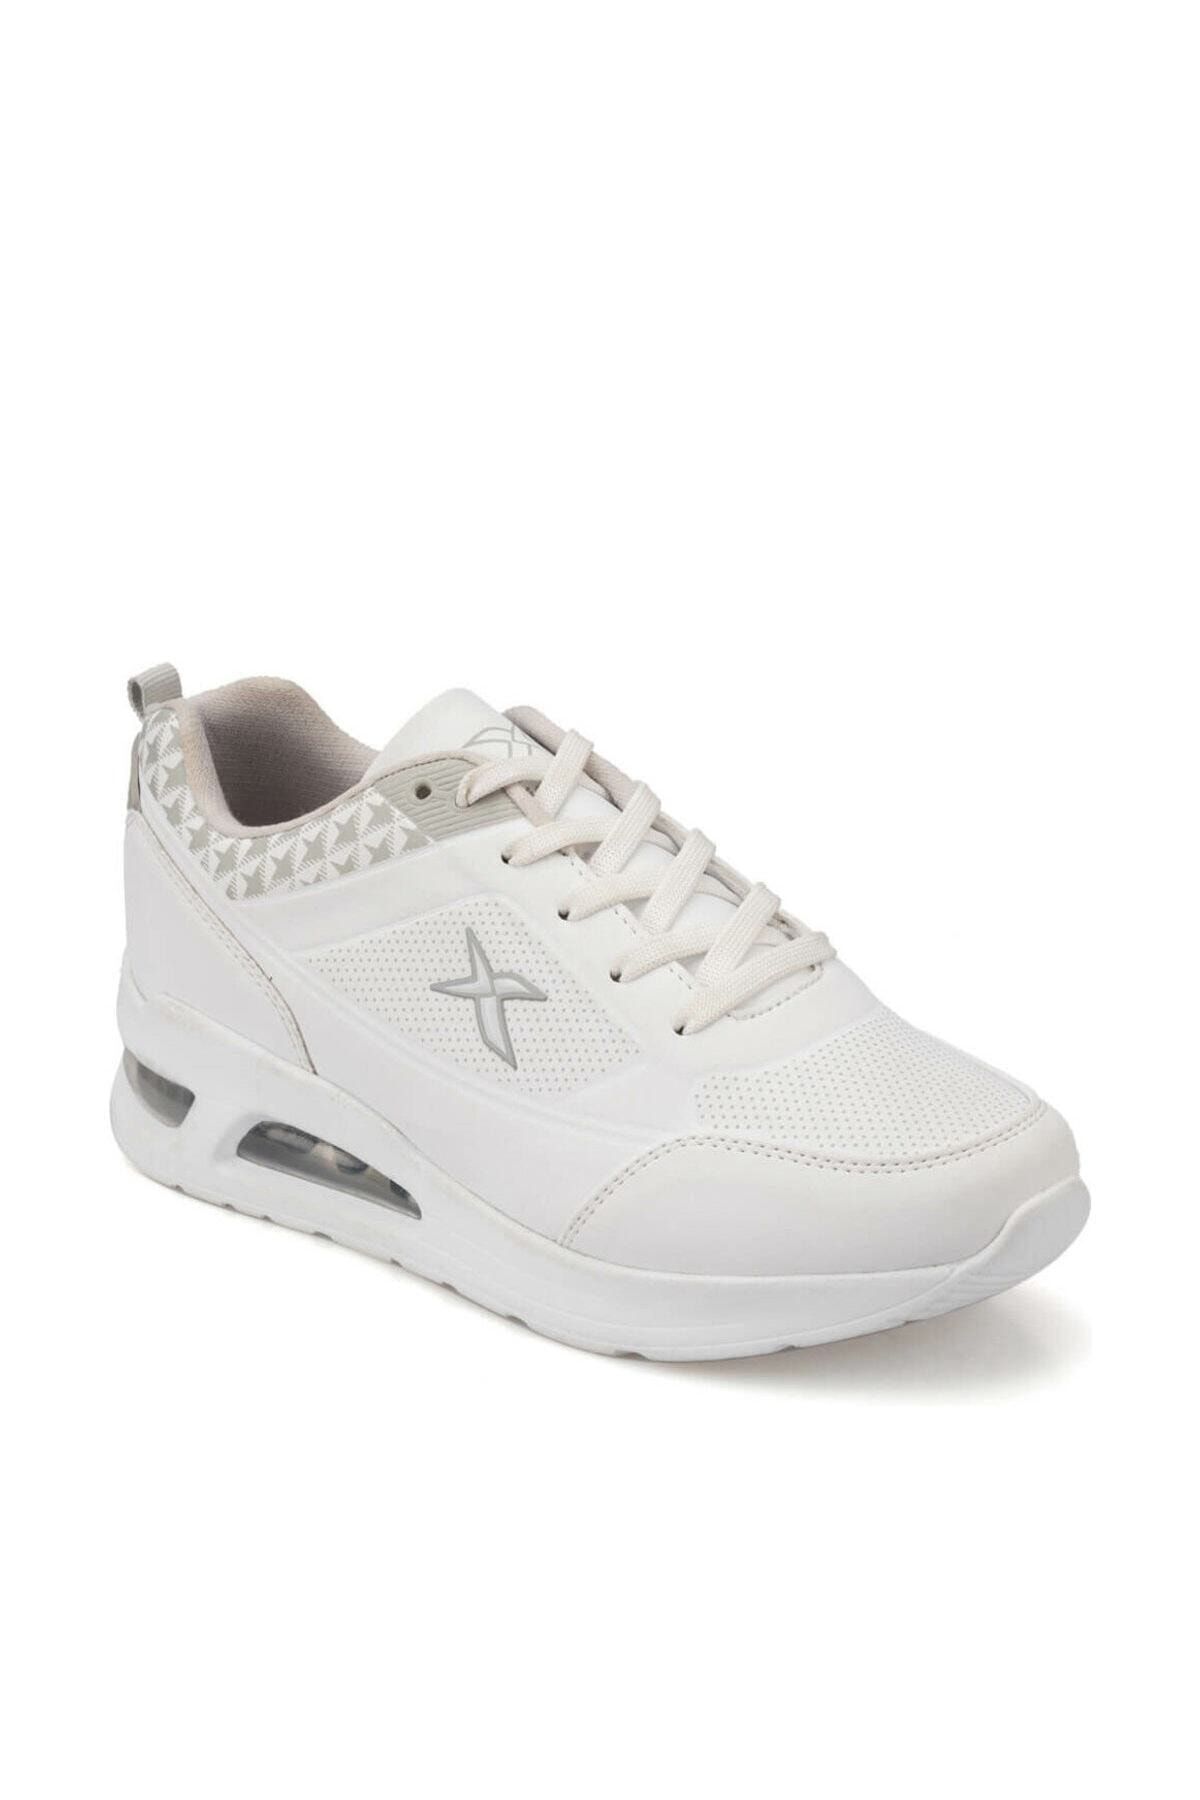 Kinetix TONA W 9PR Beyaz Kadın Sneaker Ayakkabı 100430973